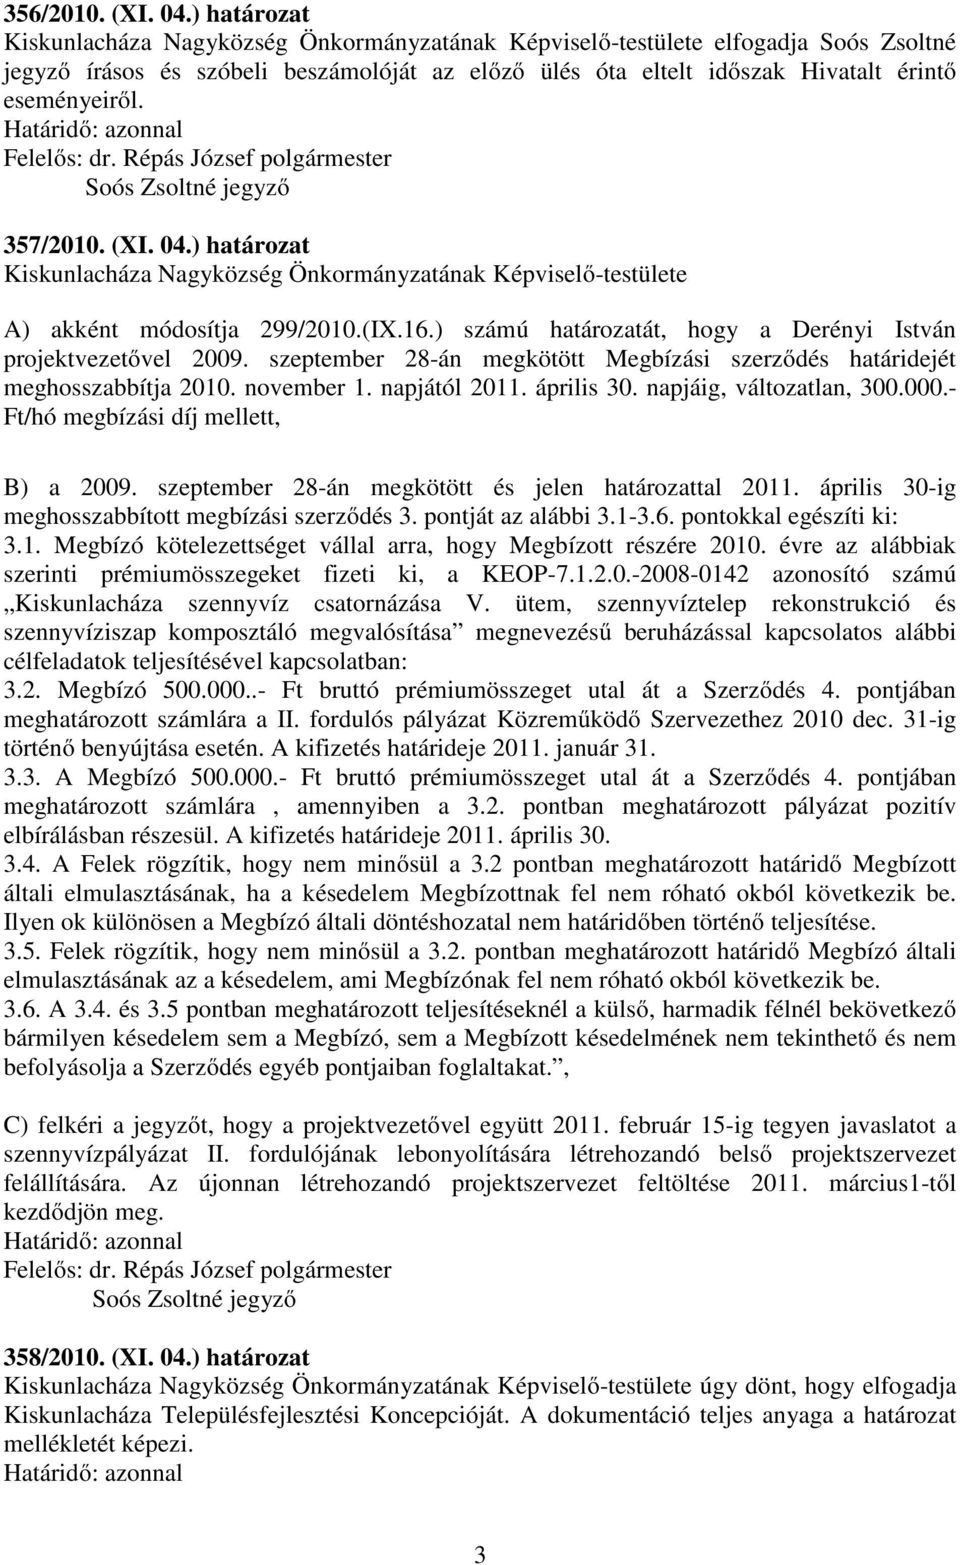 357/2010. (XI. 04.) határozat Kiskunlacháza Nagyközség Önkormányzatának Képviselő-testülete A) akként módosítja 299/2010.(IX.16.) számú határozatát, hogy a Derényi István projektvezetővel 2009.